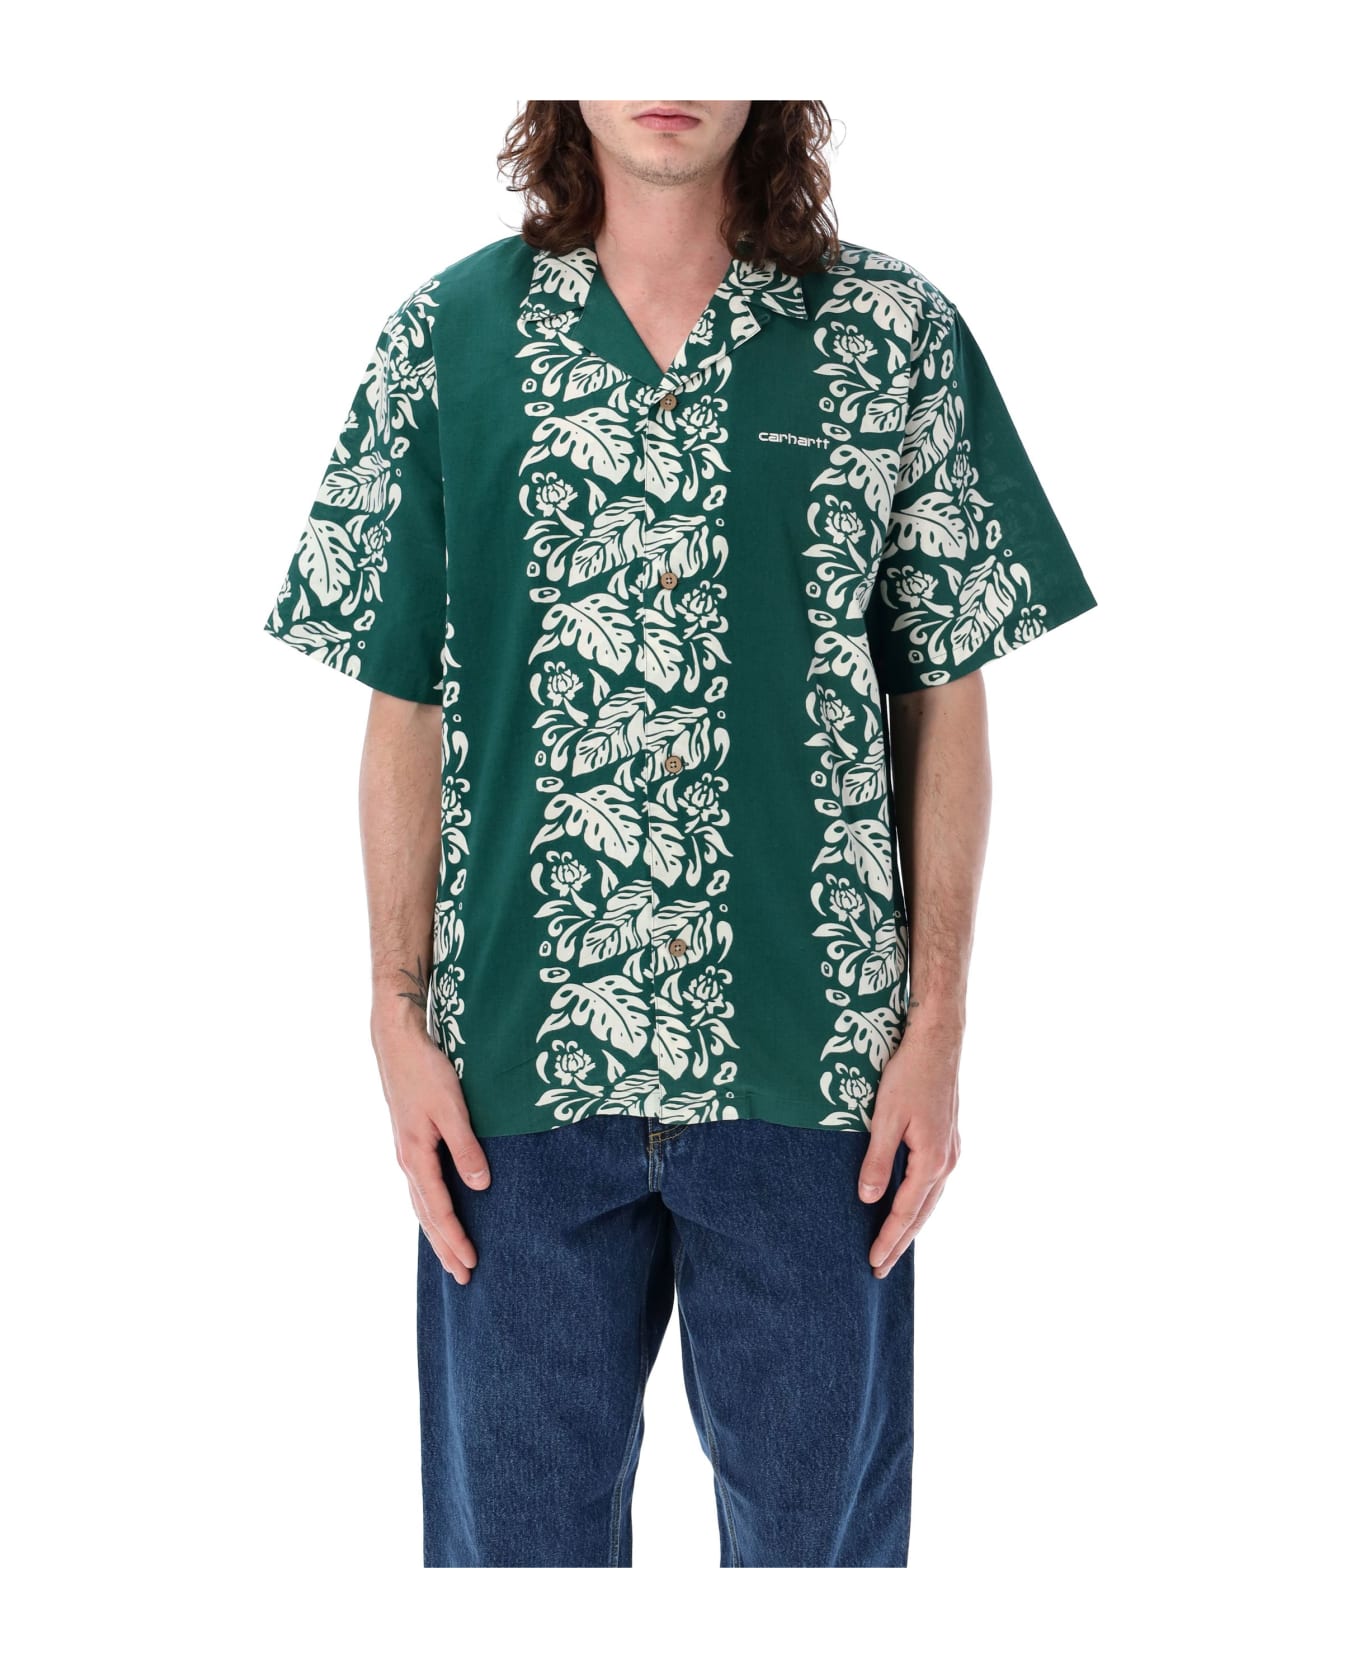 Carhartt Floral Shirt - DK GREEN